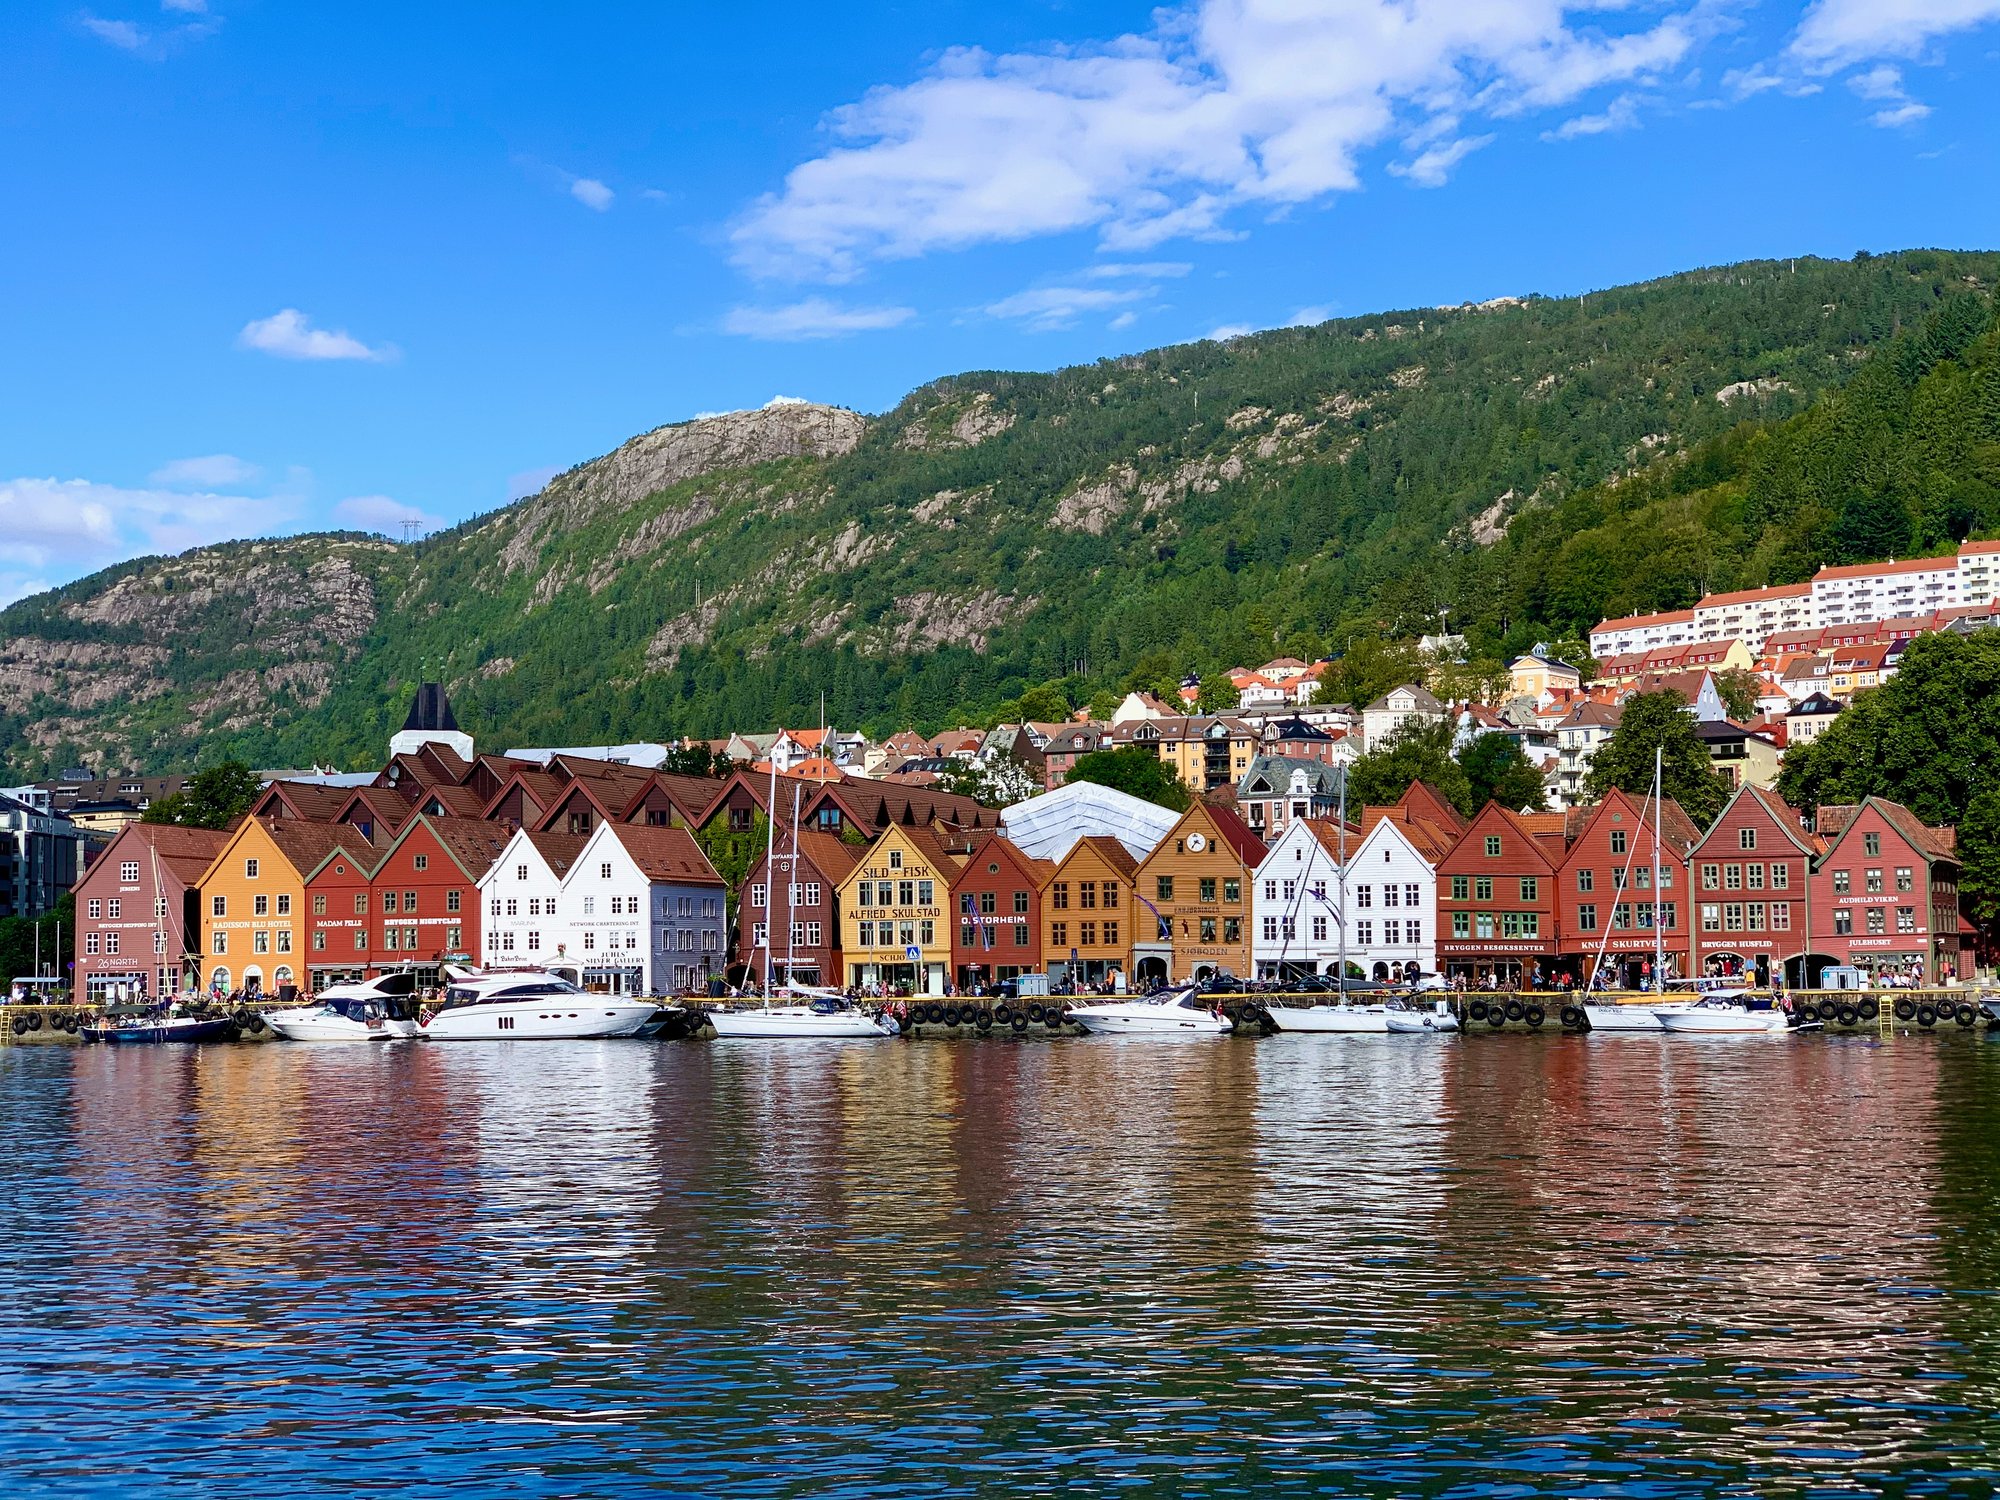 The city of Bergen in Norway.